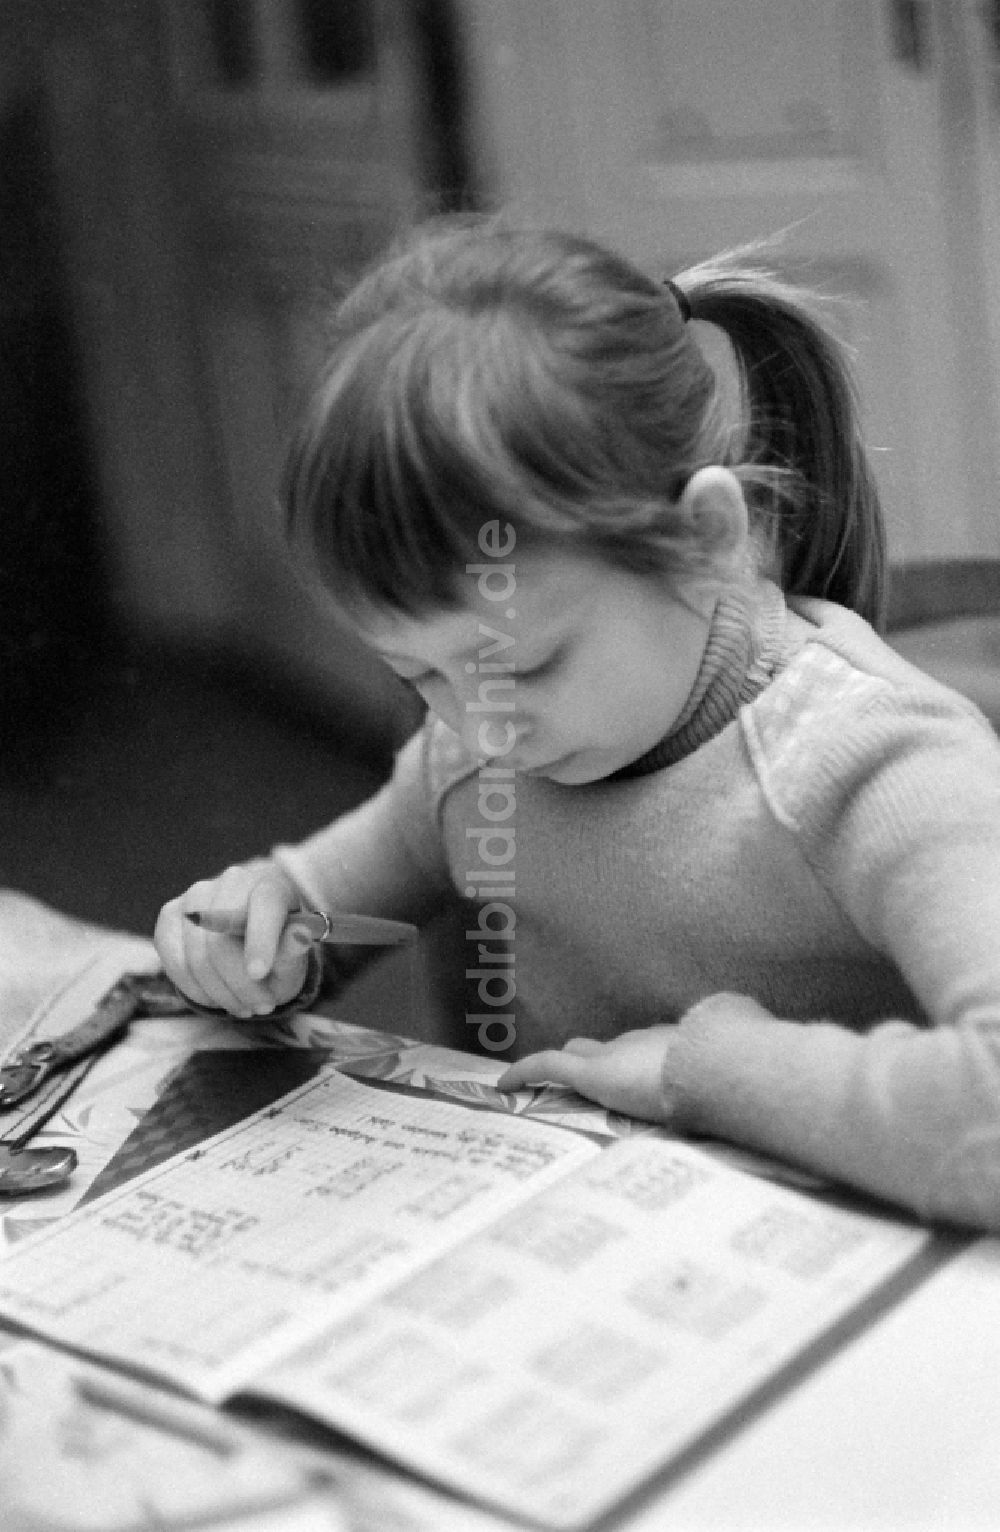 DDR-Fotoarchiv: Berlin - Ein Kind bei Schularbeiten in Berlin auf dem Gebiet der ehemaligen DDR, Deutsche Demokratische Republik